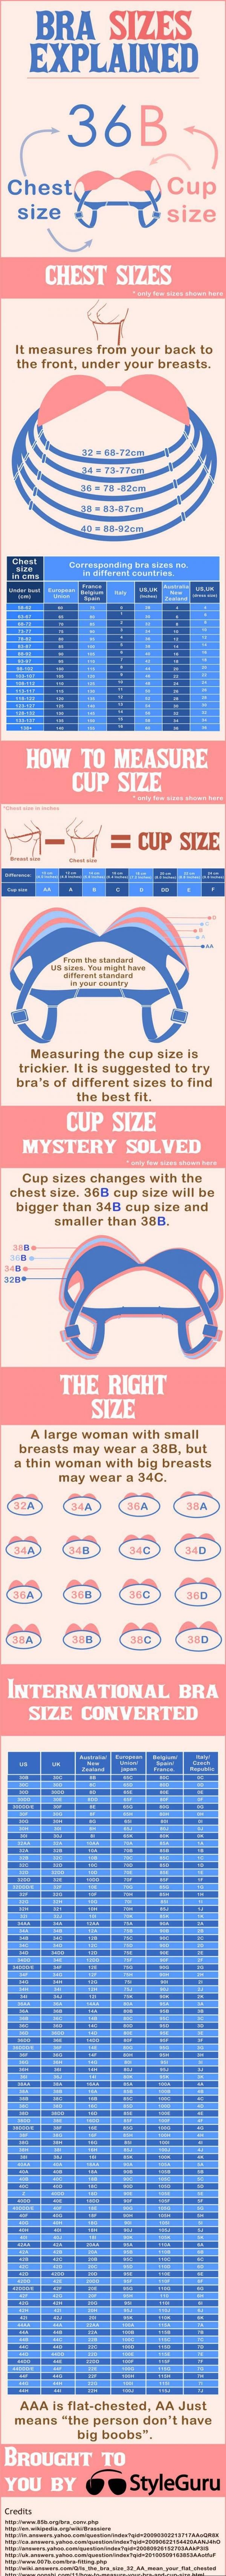 Bra sizes explained.